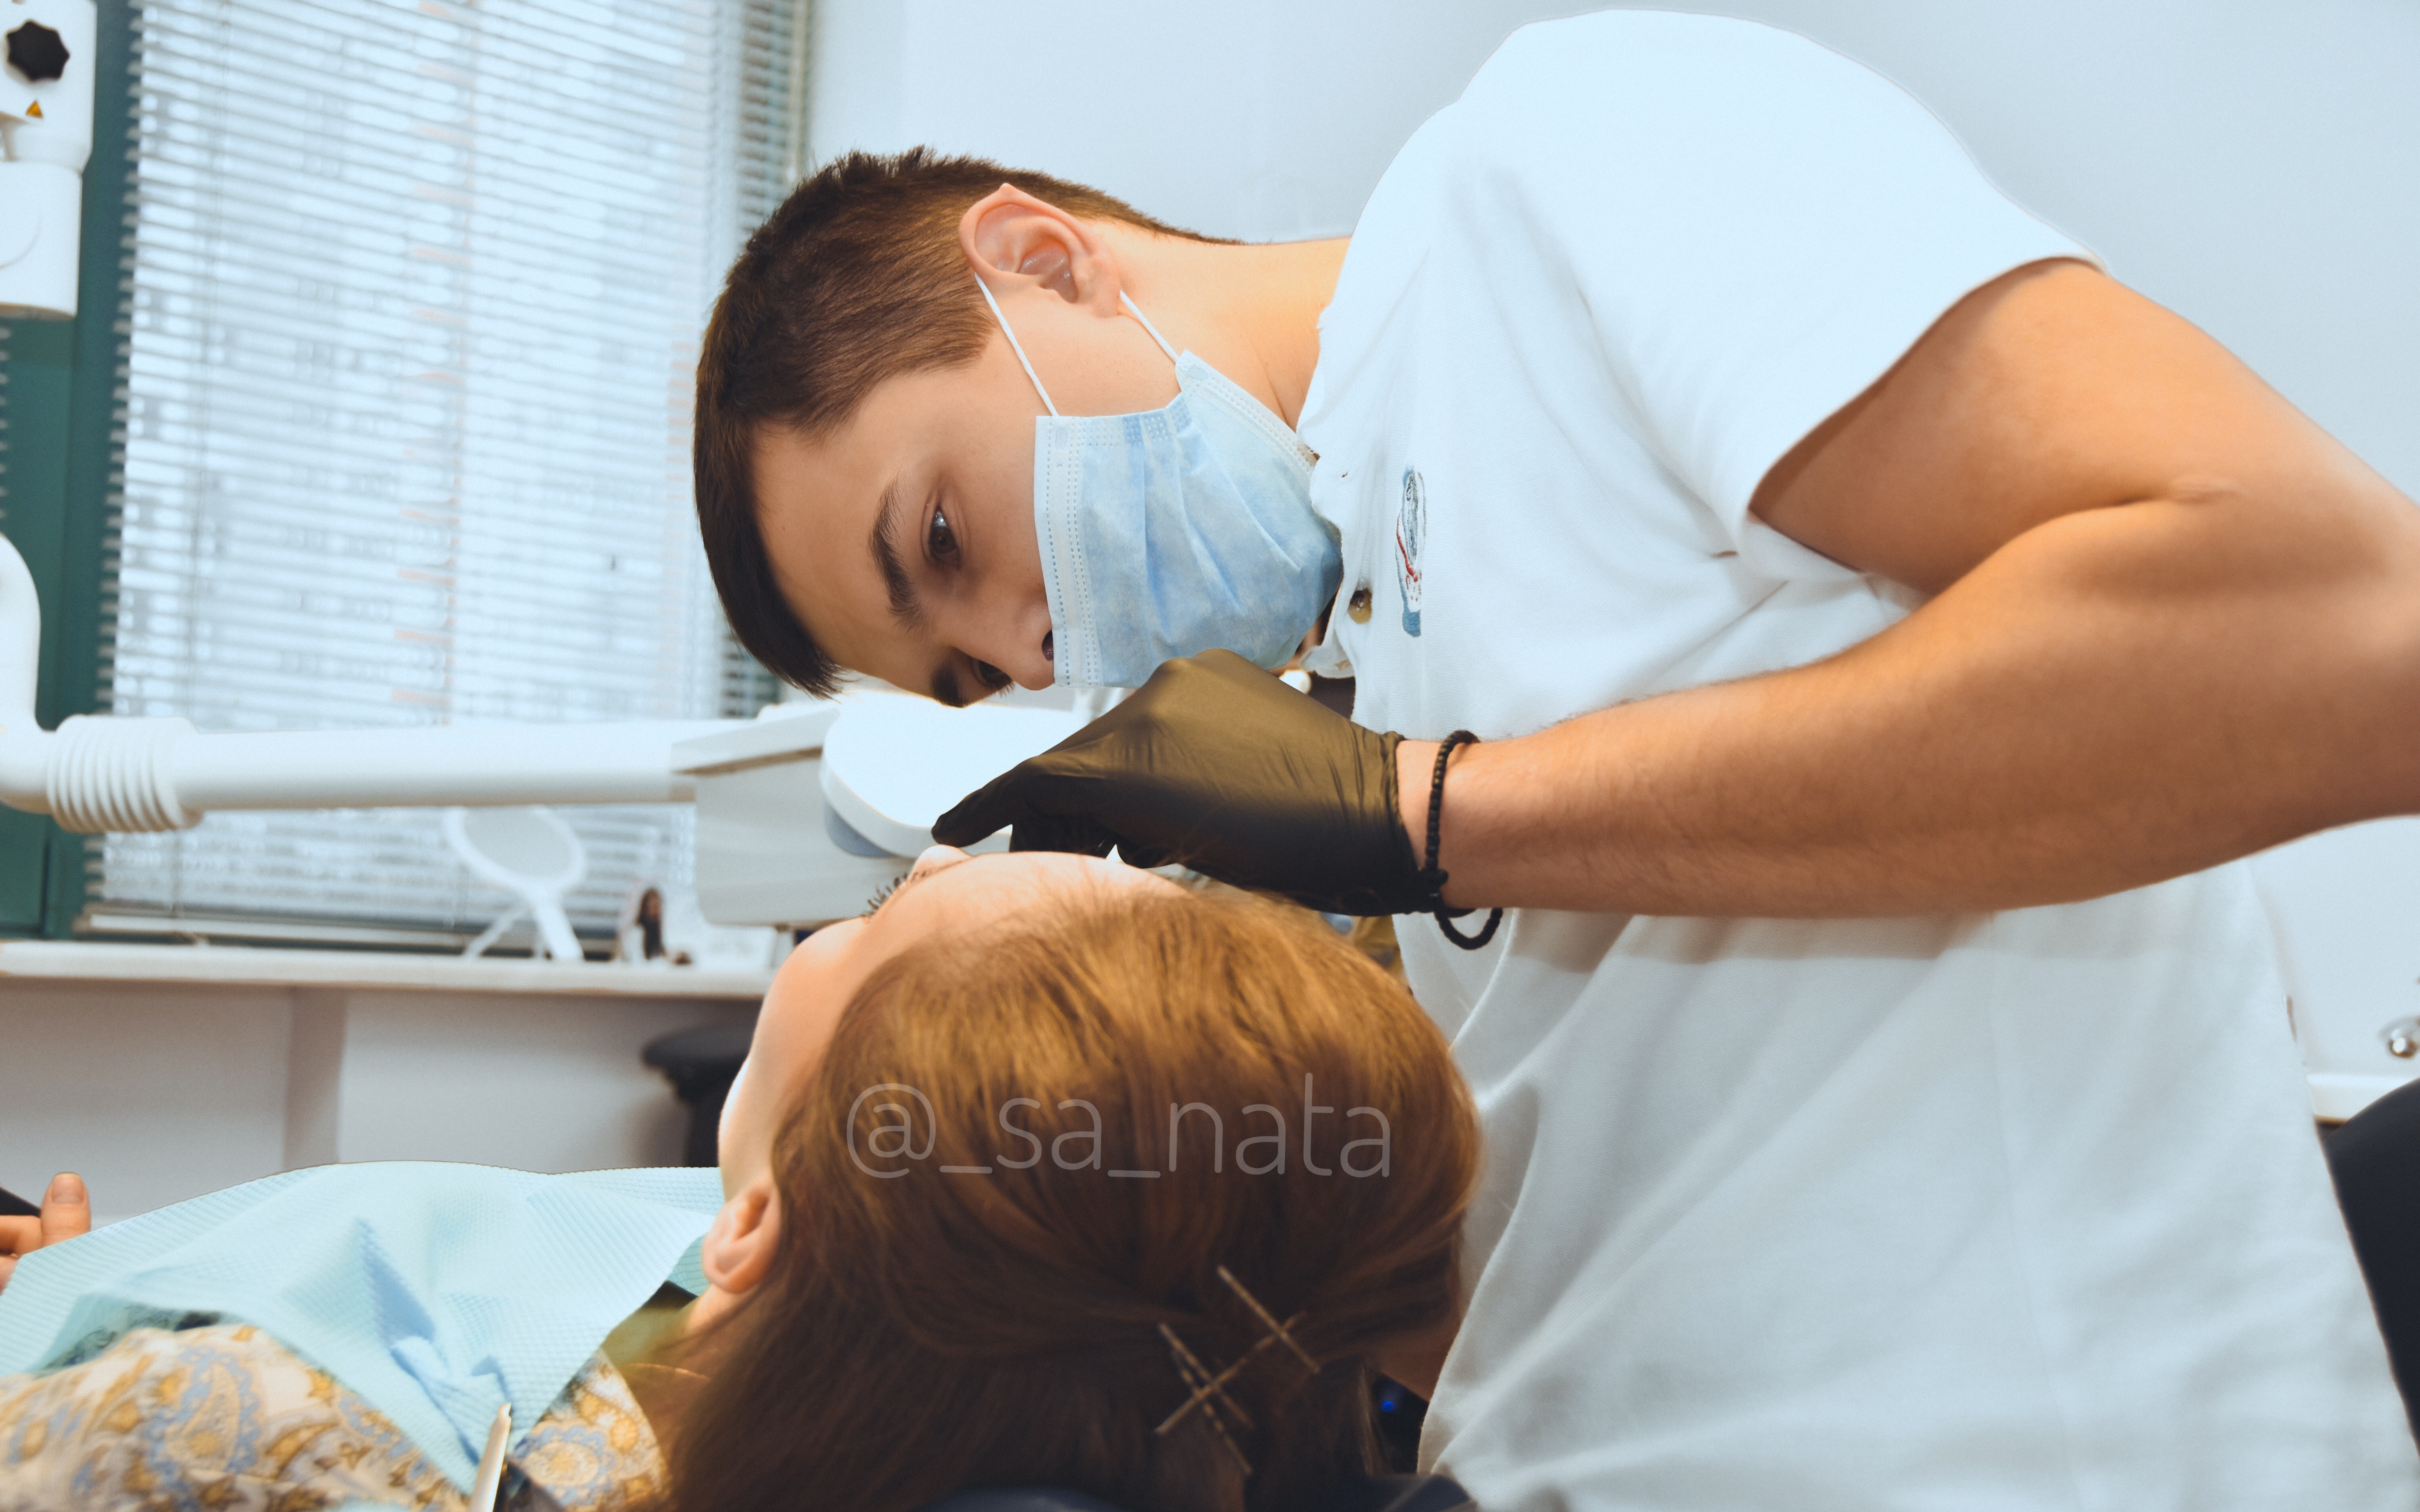 СА-НАТА — вакансия в Адміністратор стоматологічної кліники: фото 13